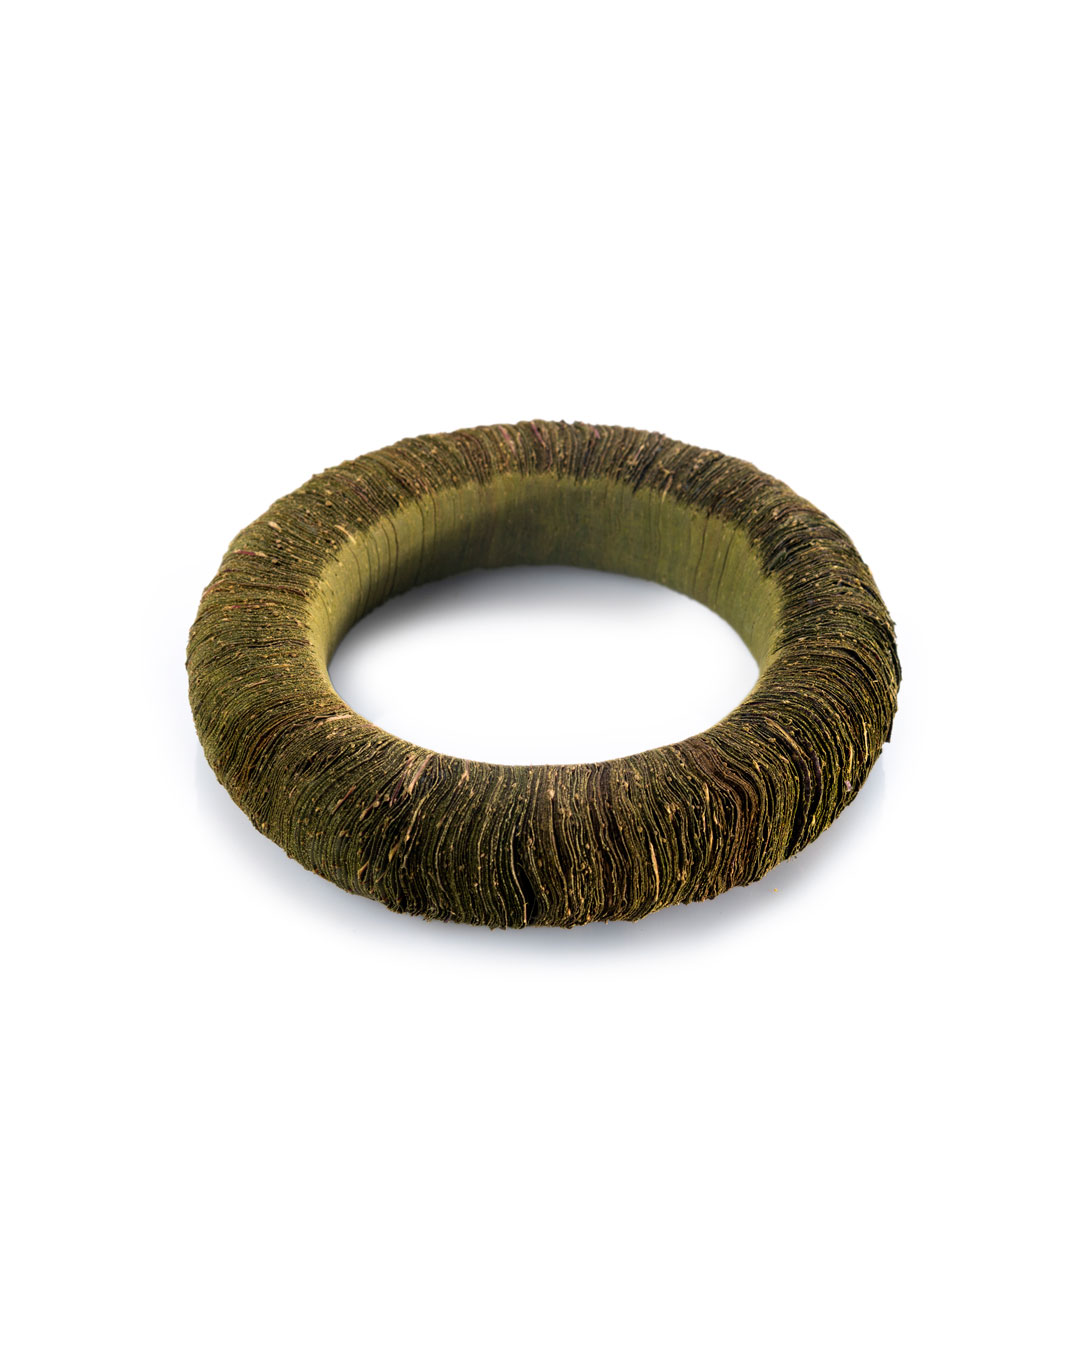 Carmen Hauser, untitled, 2019, bracelet; maple leaves, yarn, 102 x 97 x 23.5 mm, €920